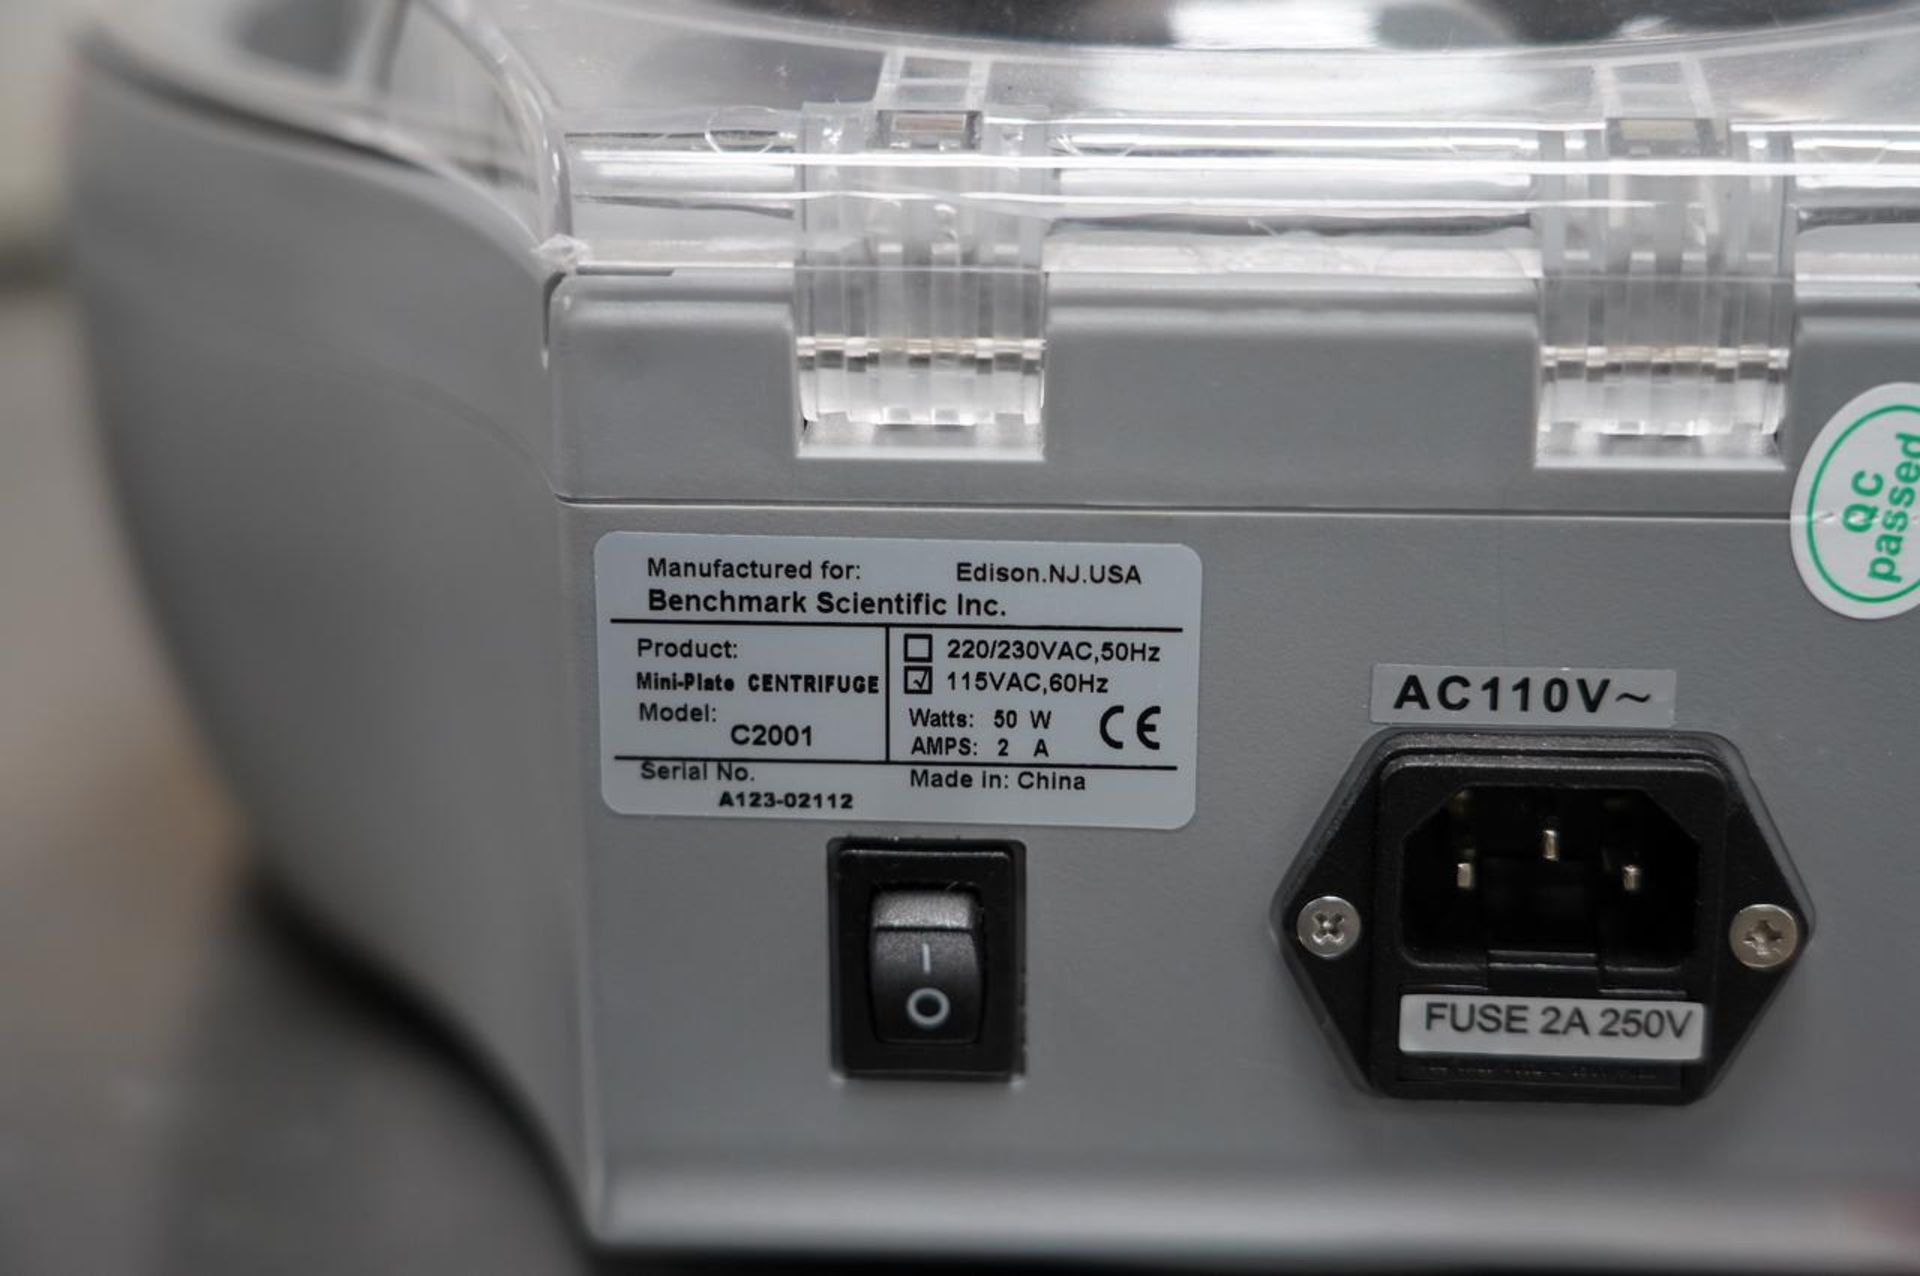 VWR C2001 Platefuge Microplate Centrifuge - Image 5 of 5